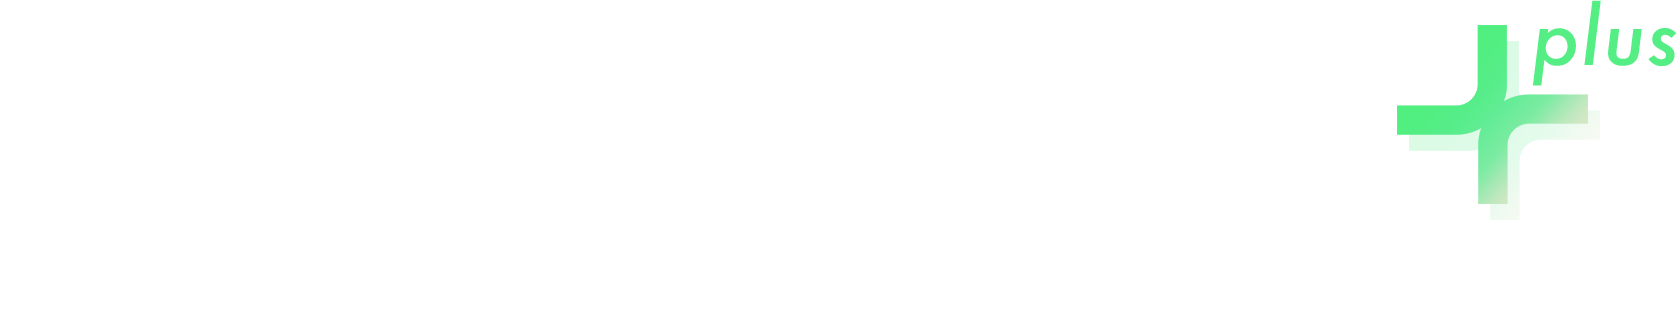 Shiprocket plus logo